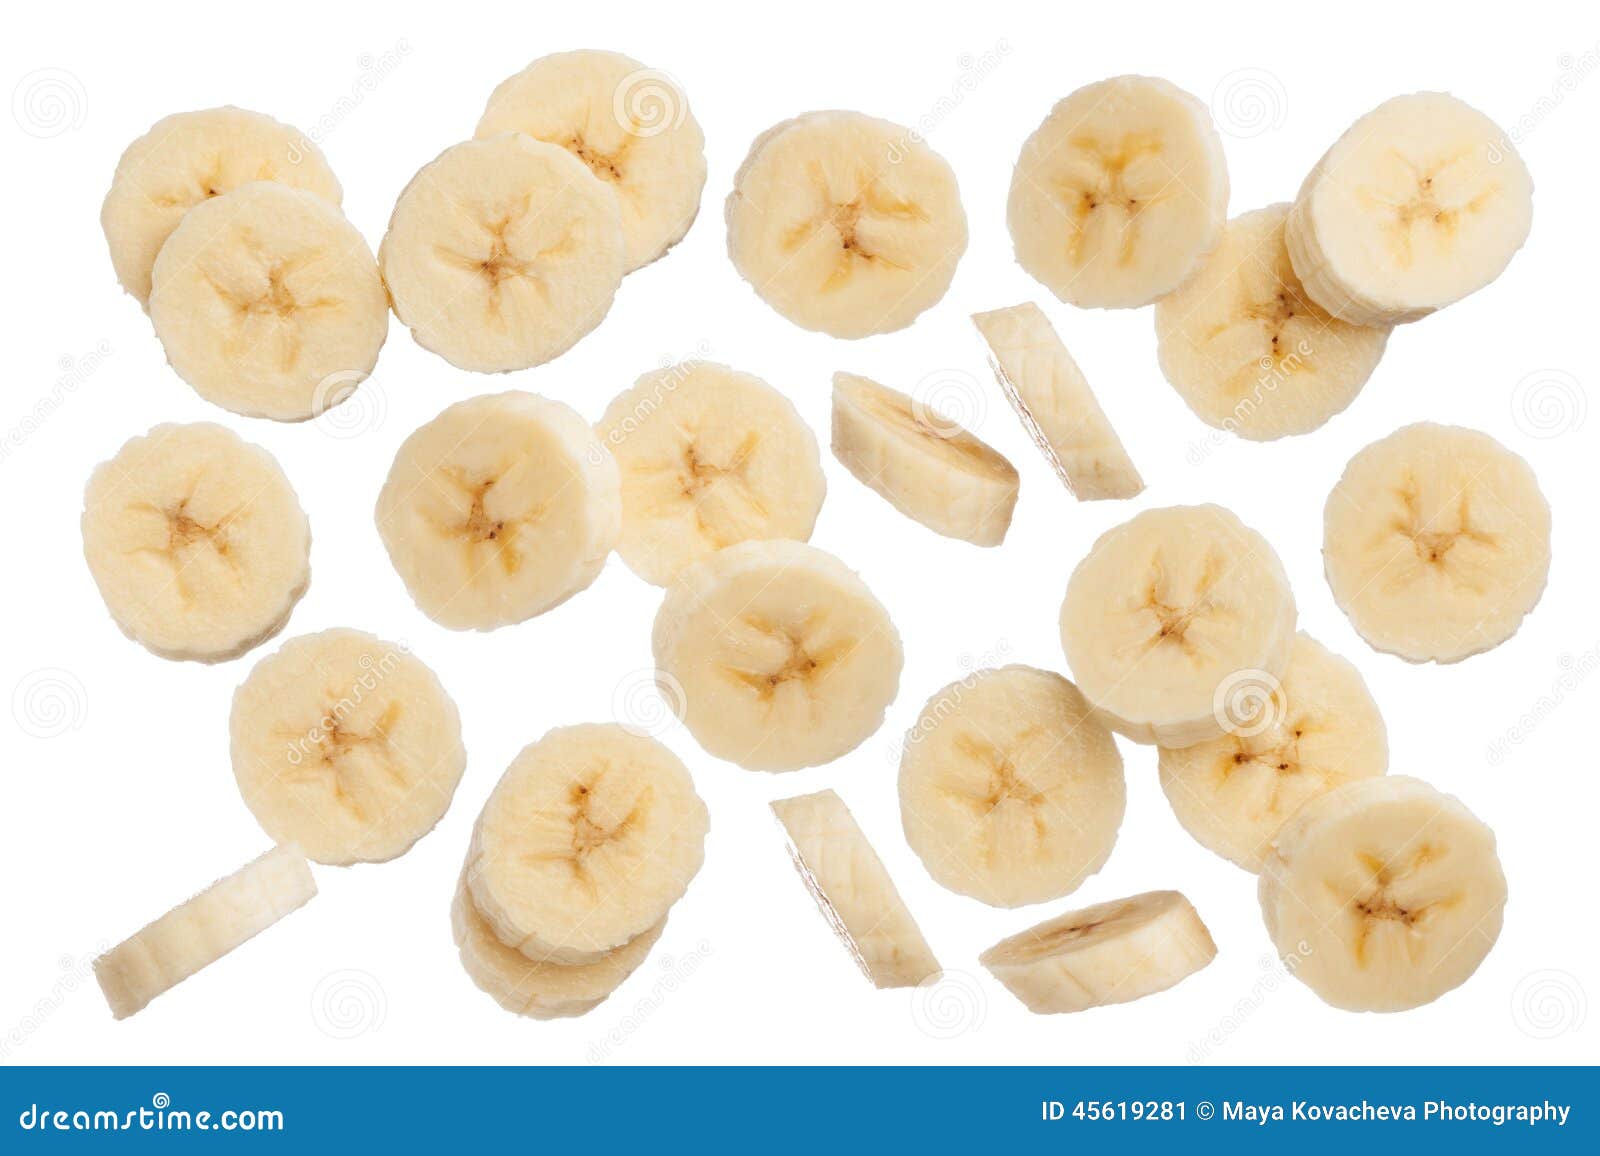 鲜美切片香蕉果仁面包 库存图片. 图片 包括有 楼梯栏杆, 对分, 正餐, 蛋糕, 鲜美, 背包, 外壳 - 111604741